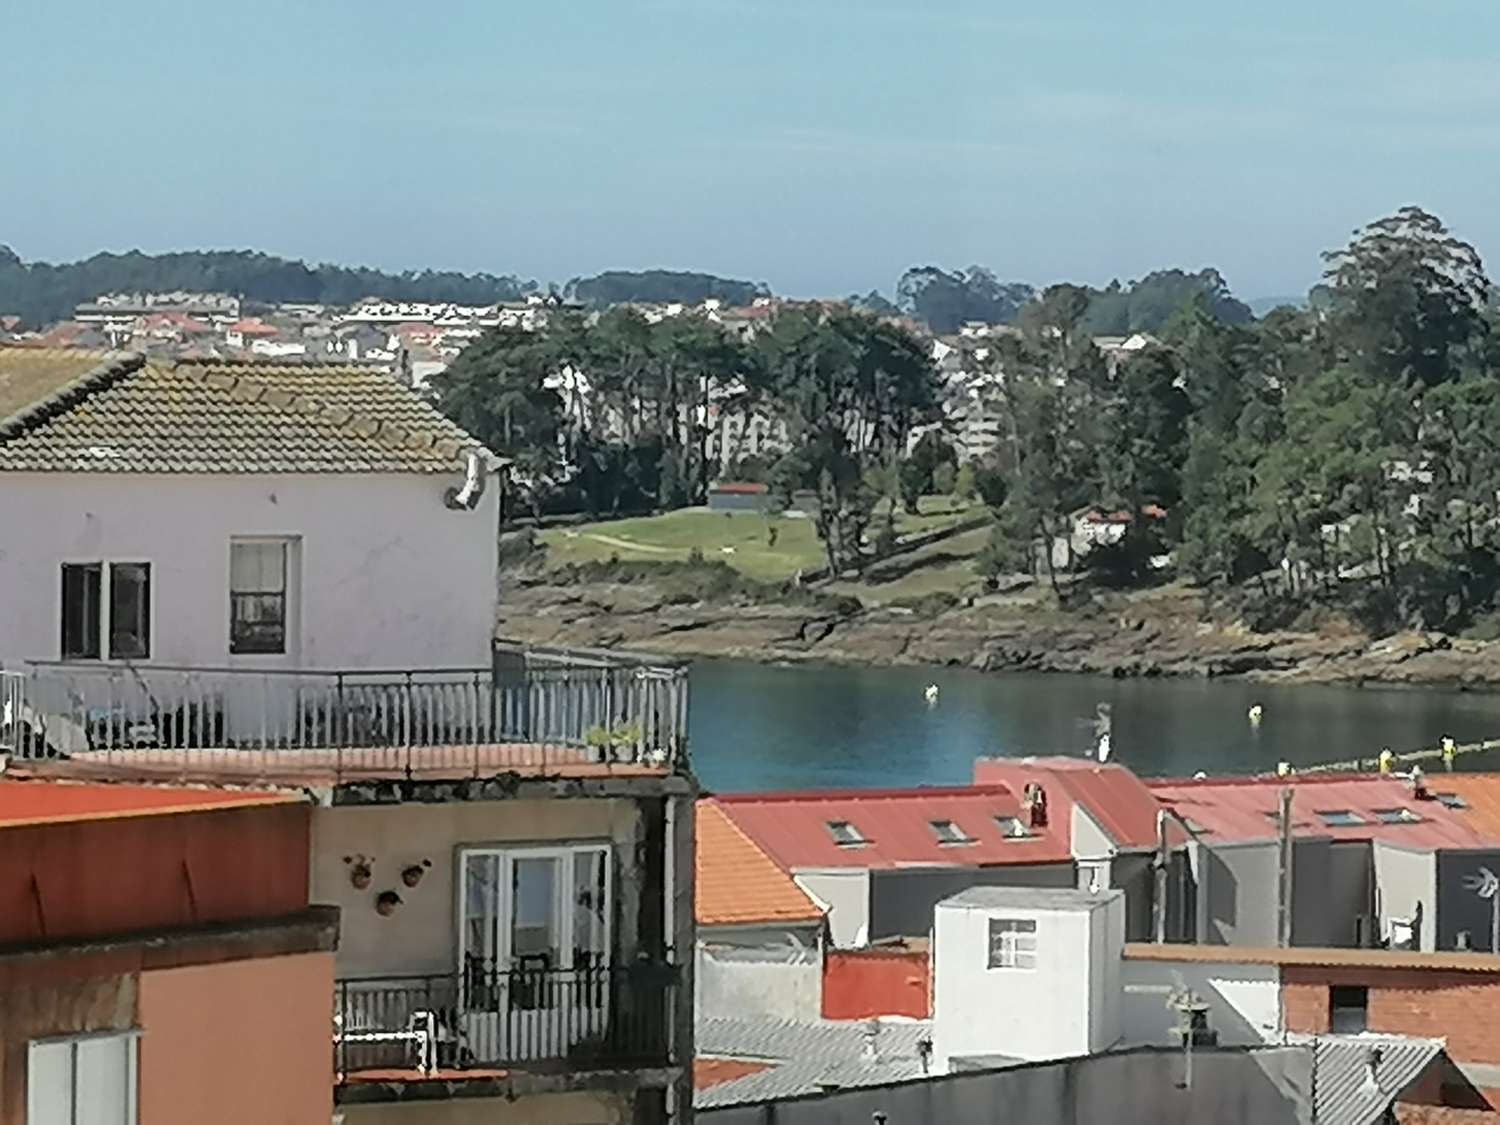 Sanxenxo: A7111: Bydlení s nádherným výhledem na moře...